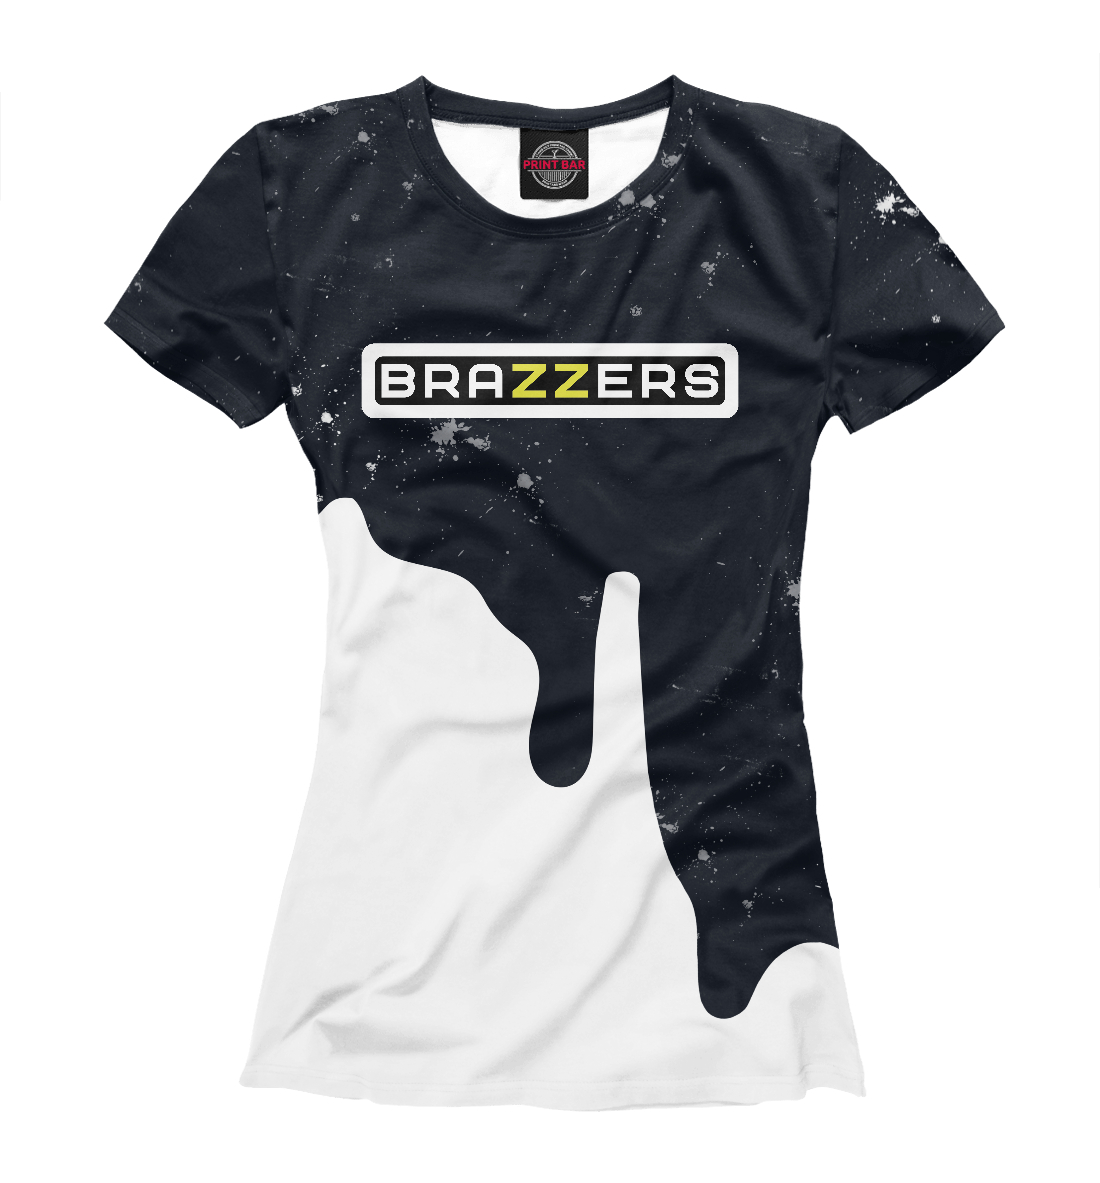 Детская Футболка с надписью Brazzers для девочек, артикул BRZ-108057-fut-1mp